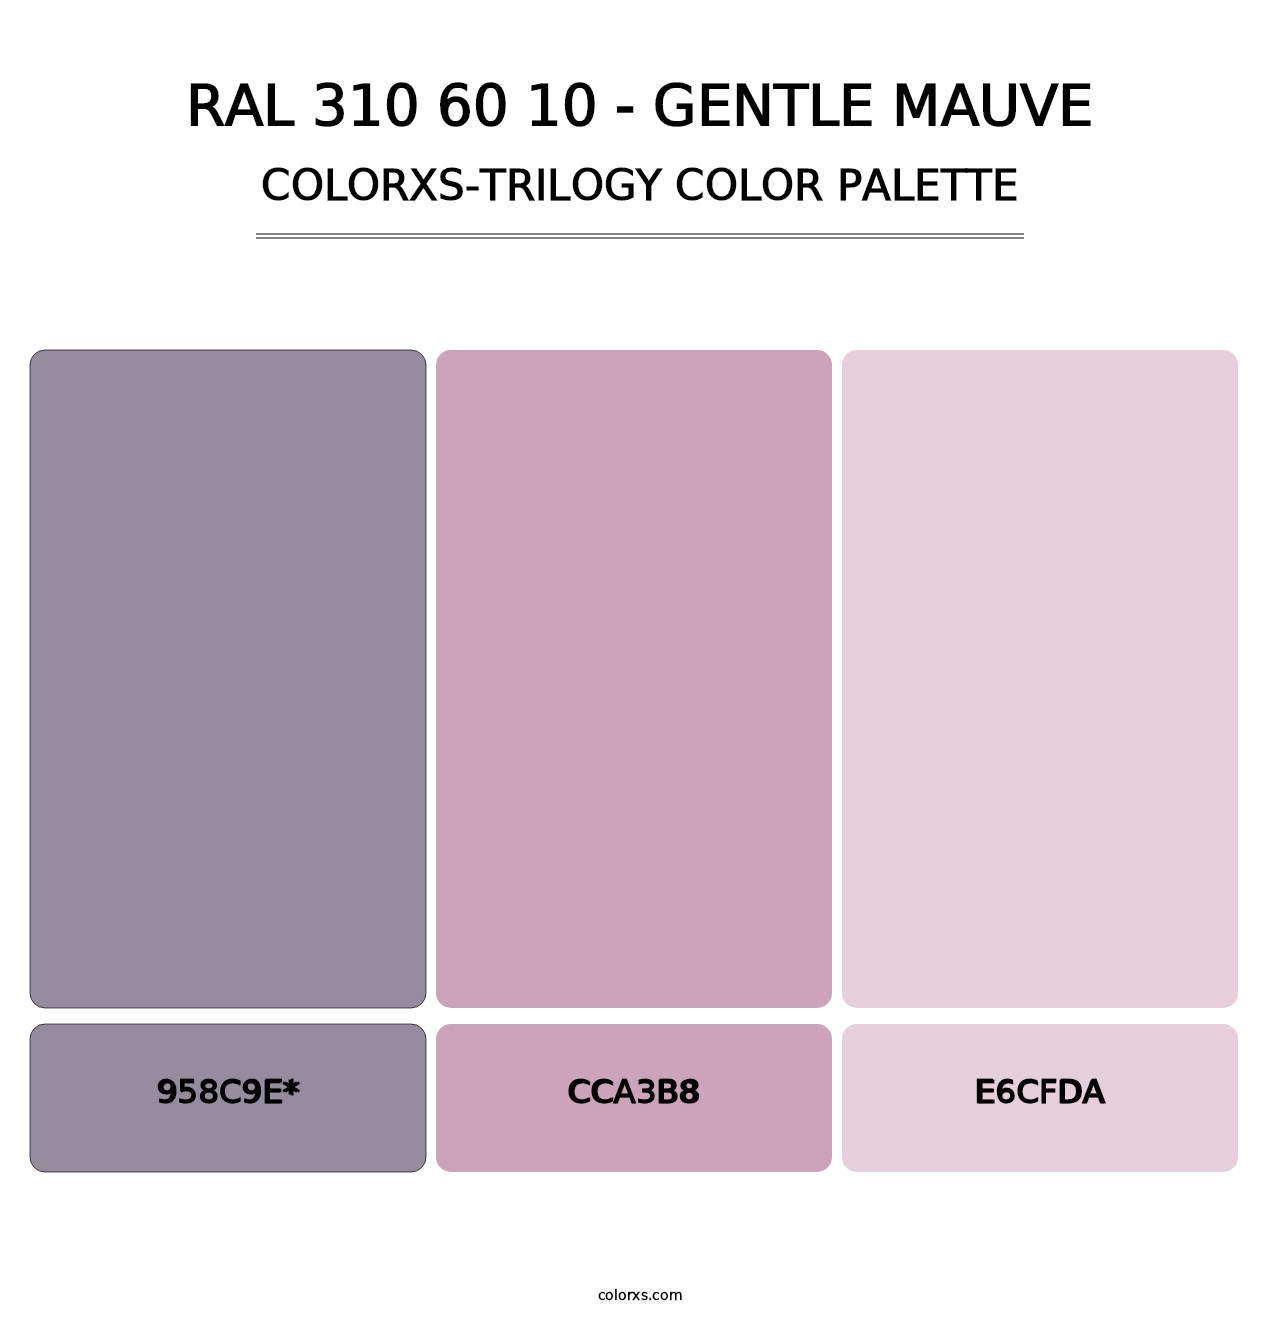 RAL 310 60 10 - Gentle Mauve - Colorxs Trilogy Palette